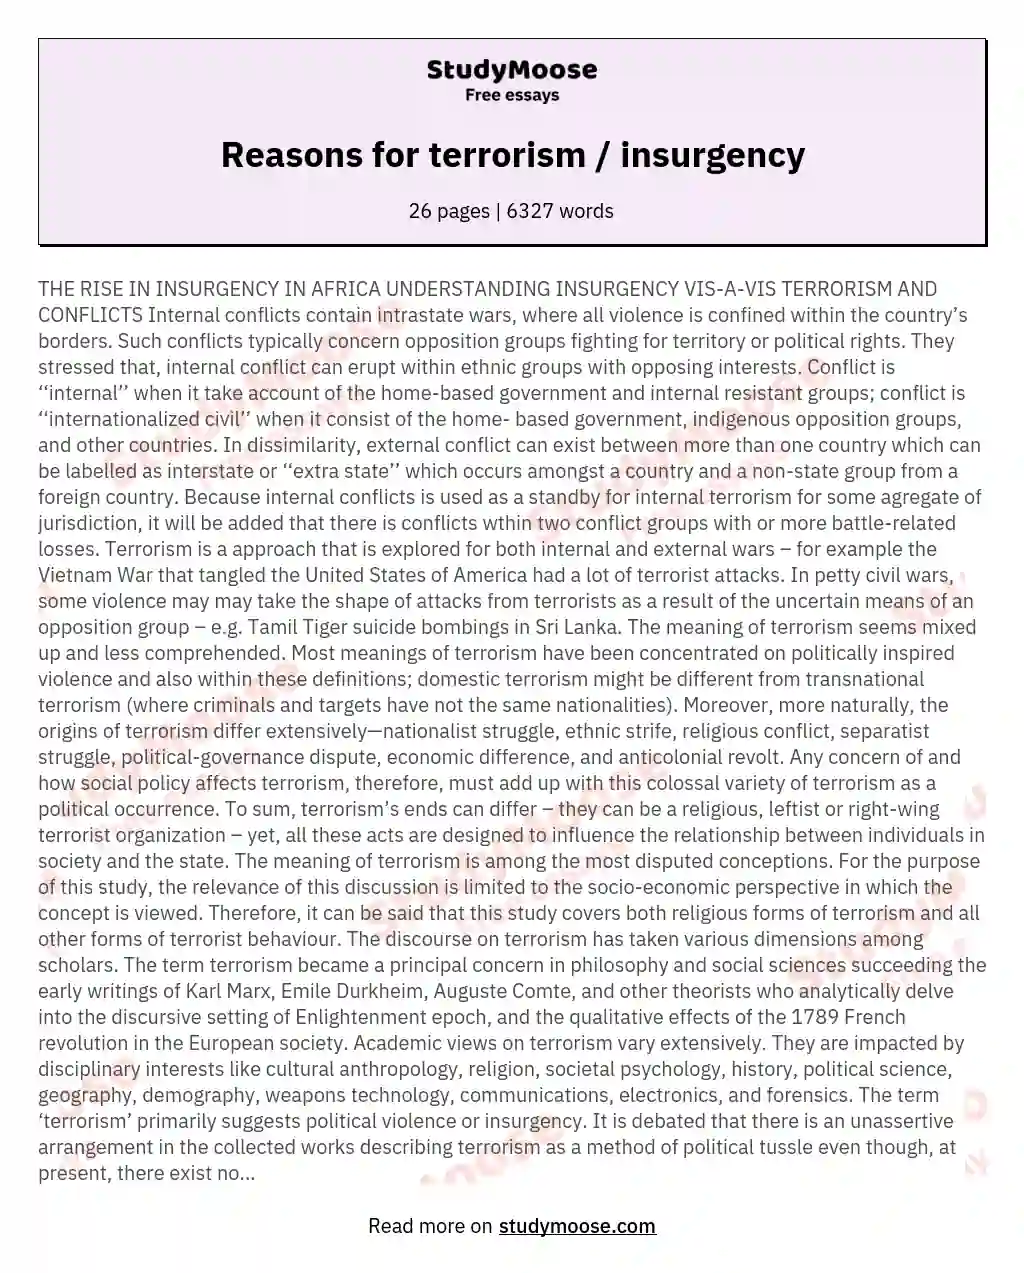 Reasons for terrorism / insurgency essay